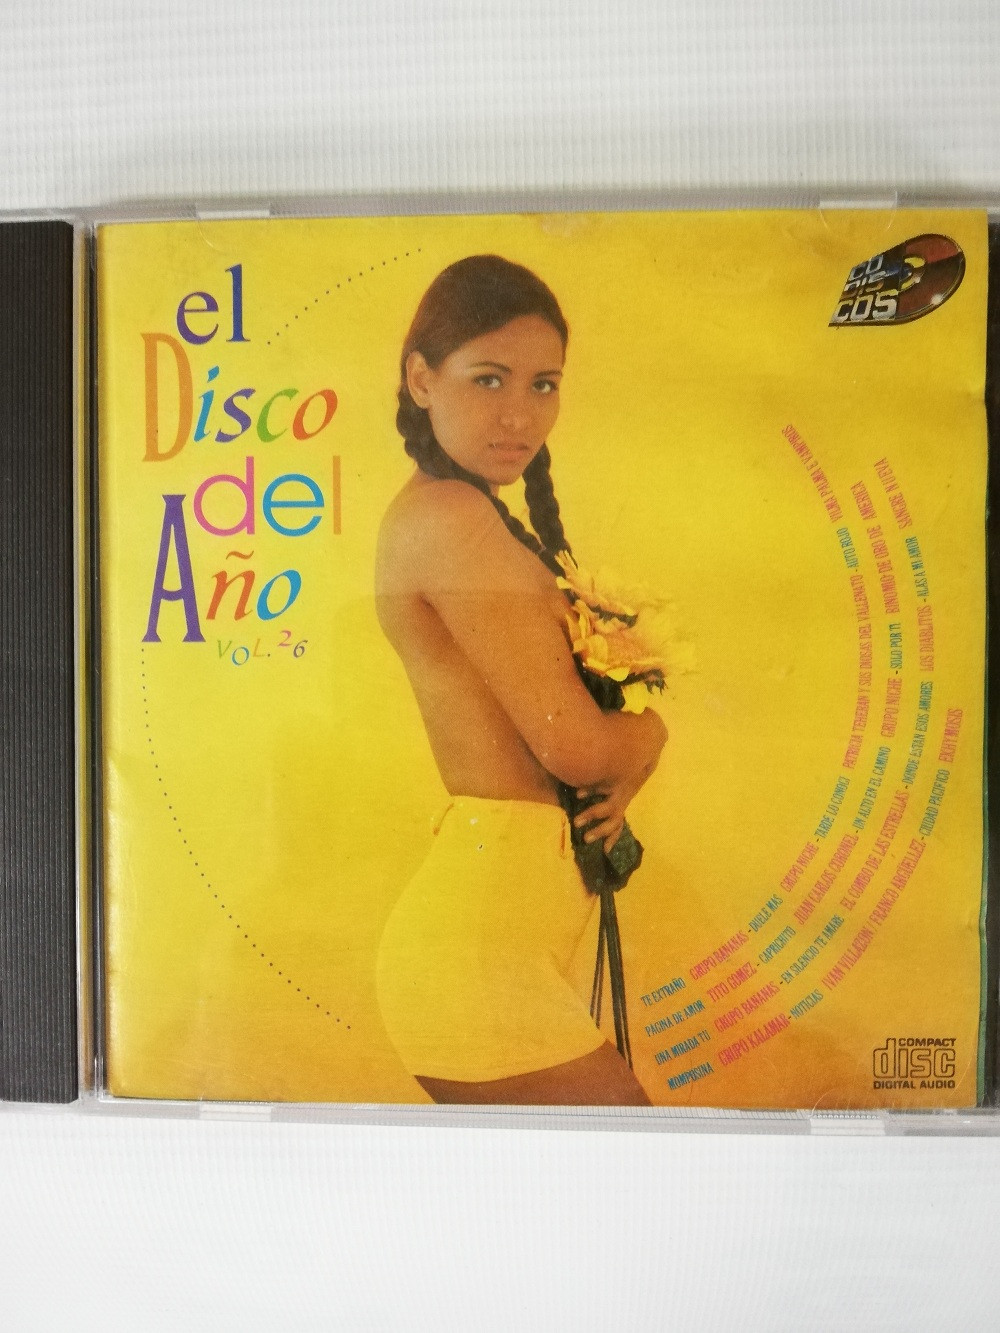 Imagen CD EL DISCO DEL AÑO - EL DISCO DEL AÑO VOL. 26 1